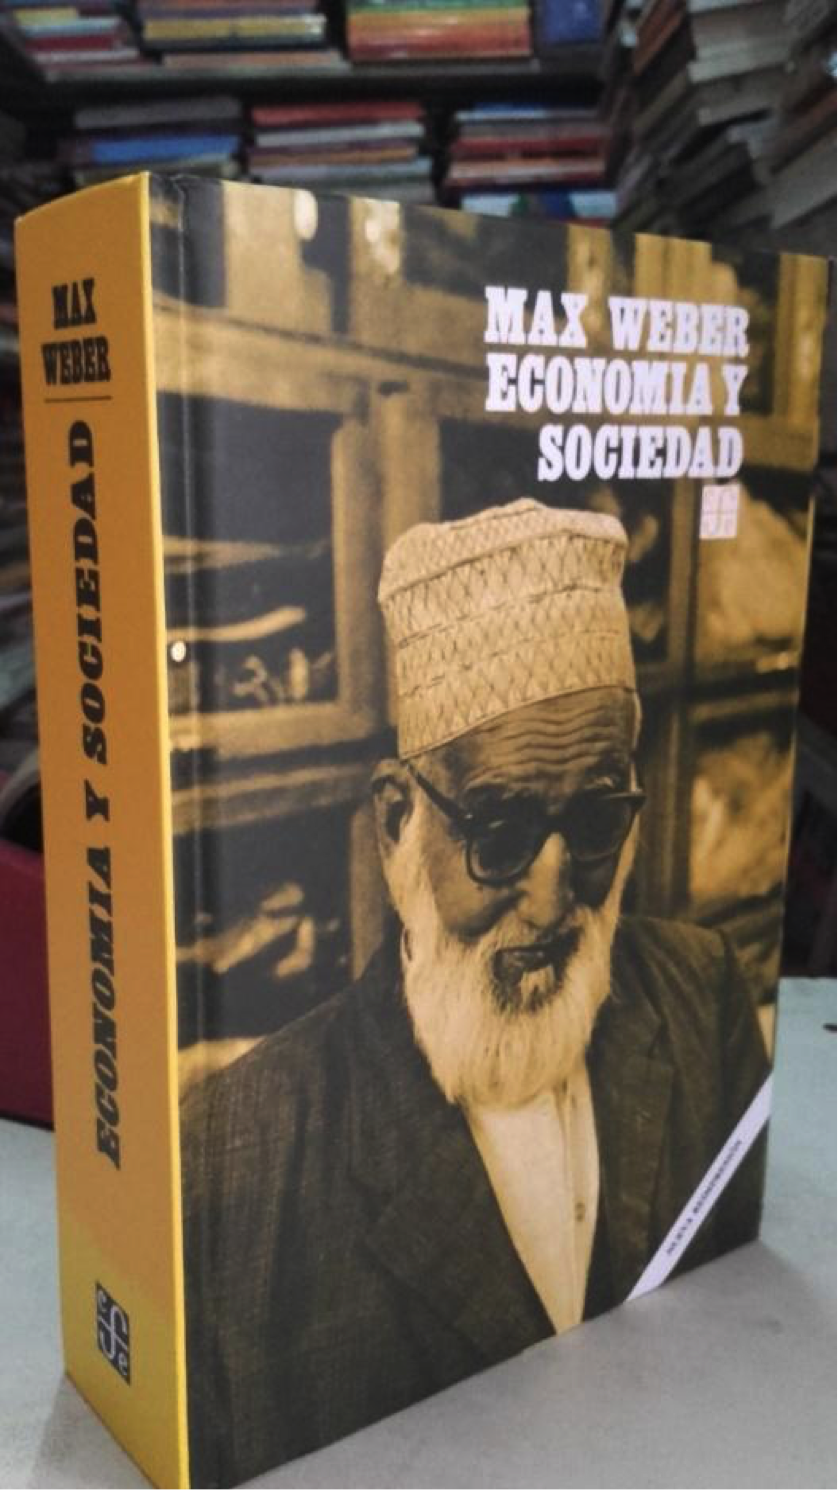 Portada de un libro de Max Weber llamado Economía y Sociedad. En el libro se ve la foto de un hombre con gafas de sol y barba blanca